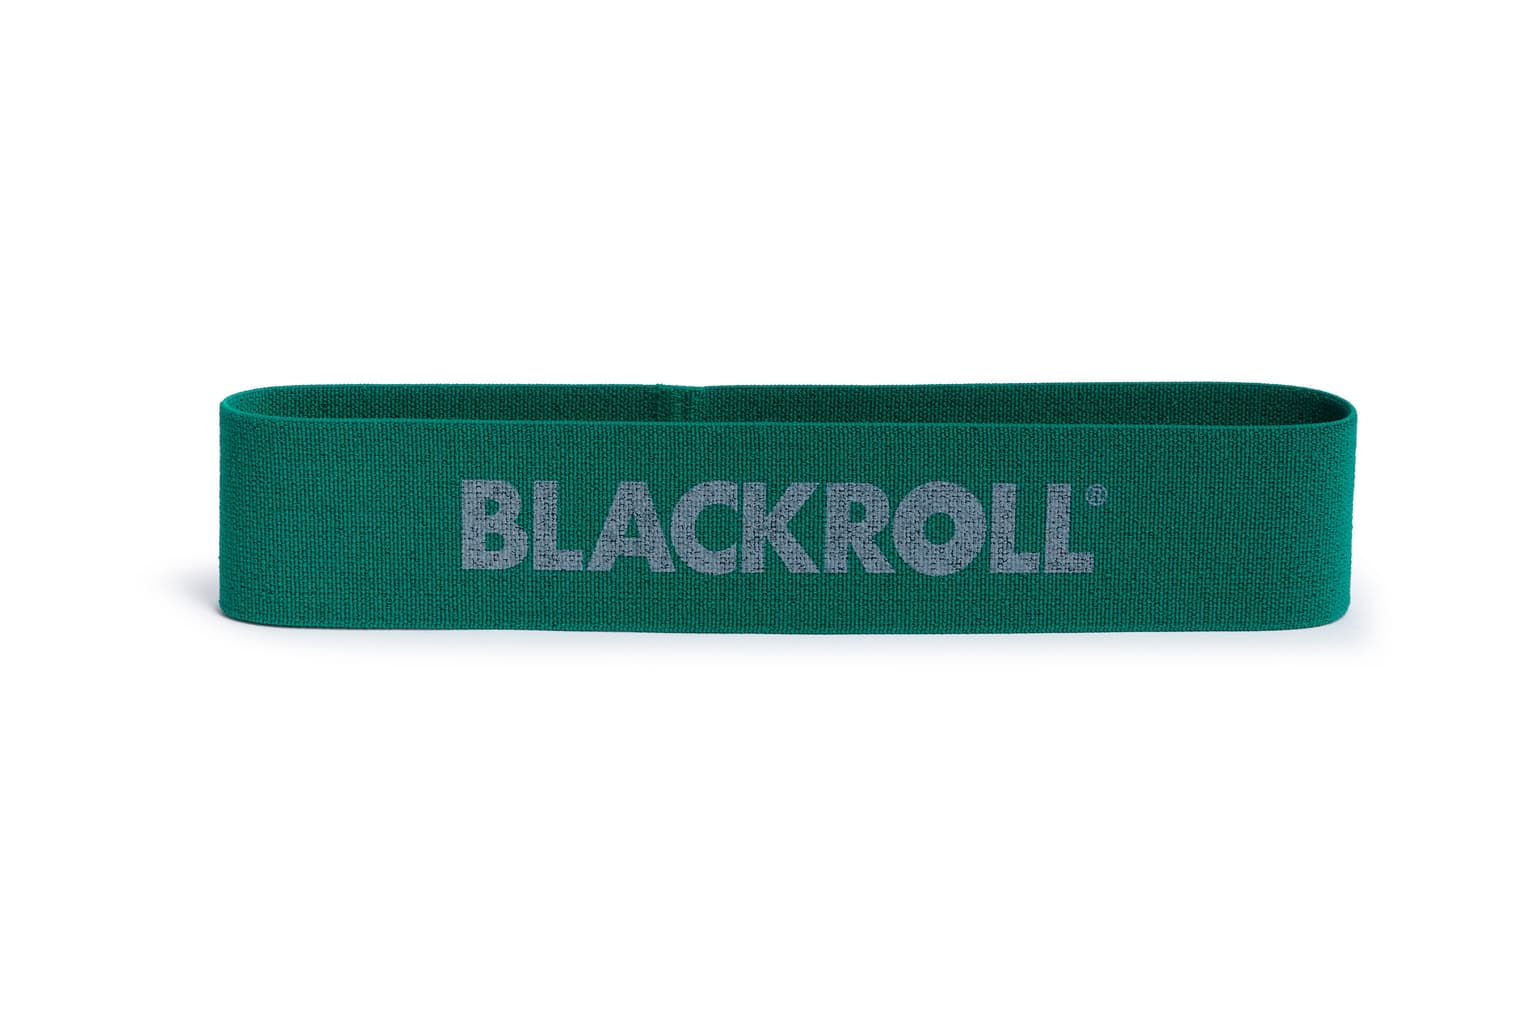 Blackroll Blackroll Loop Band Set Elastico fitness 2